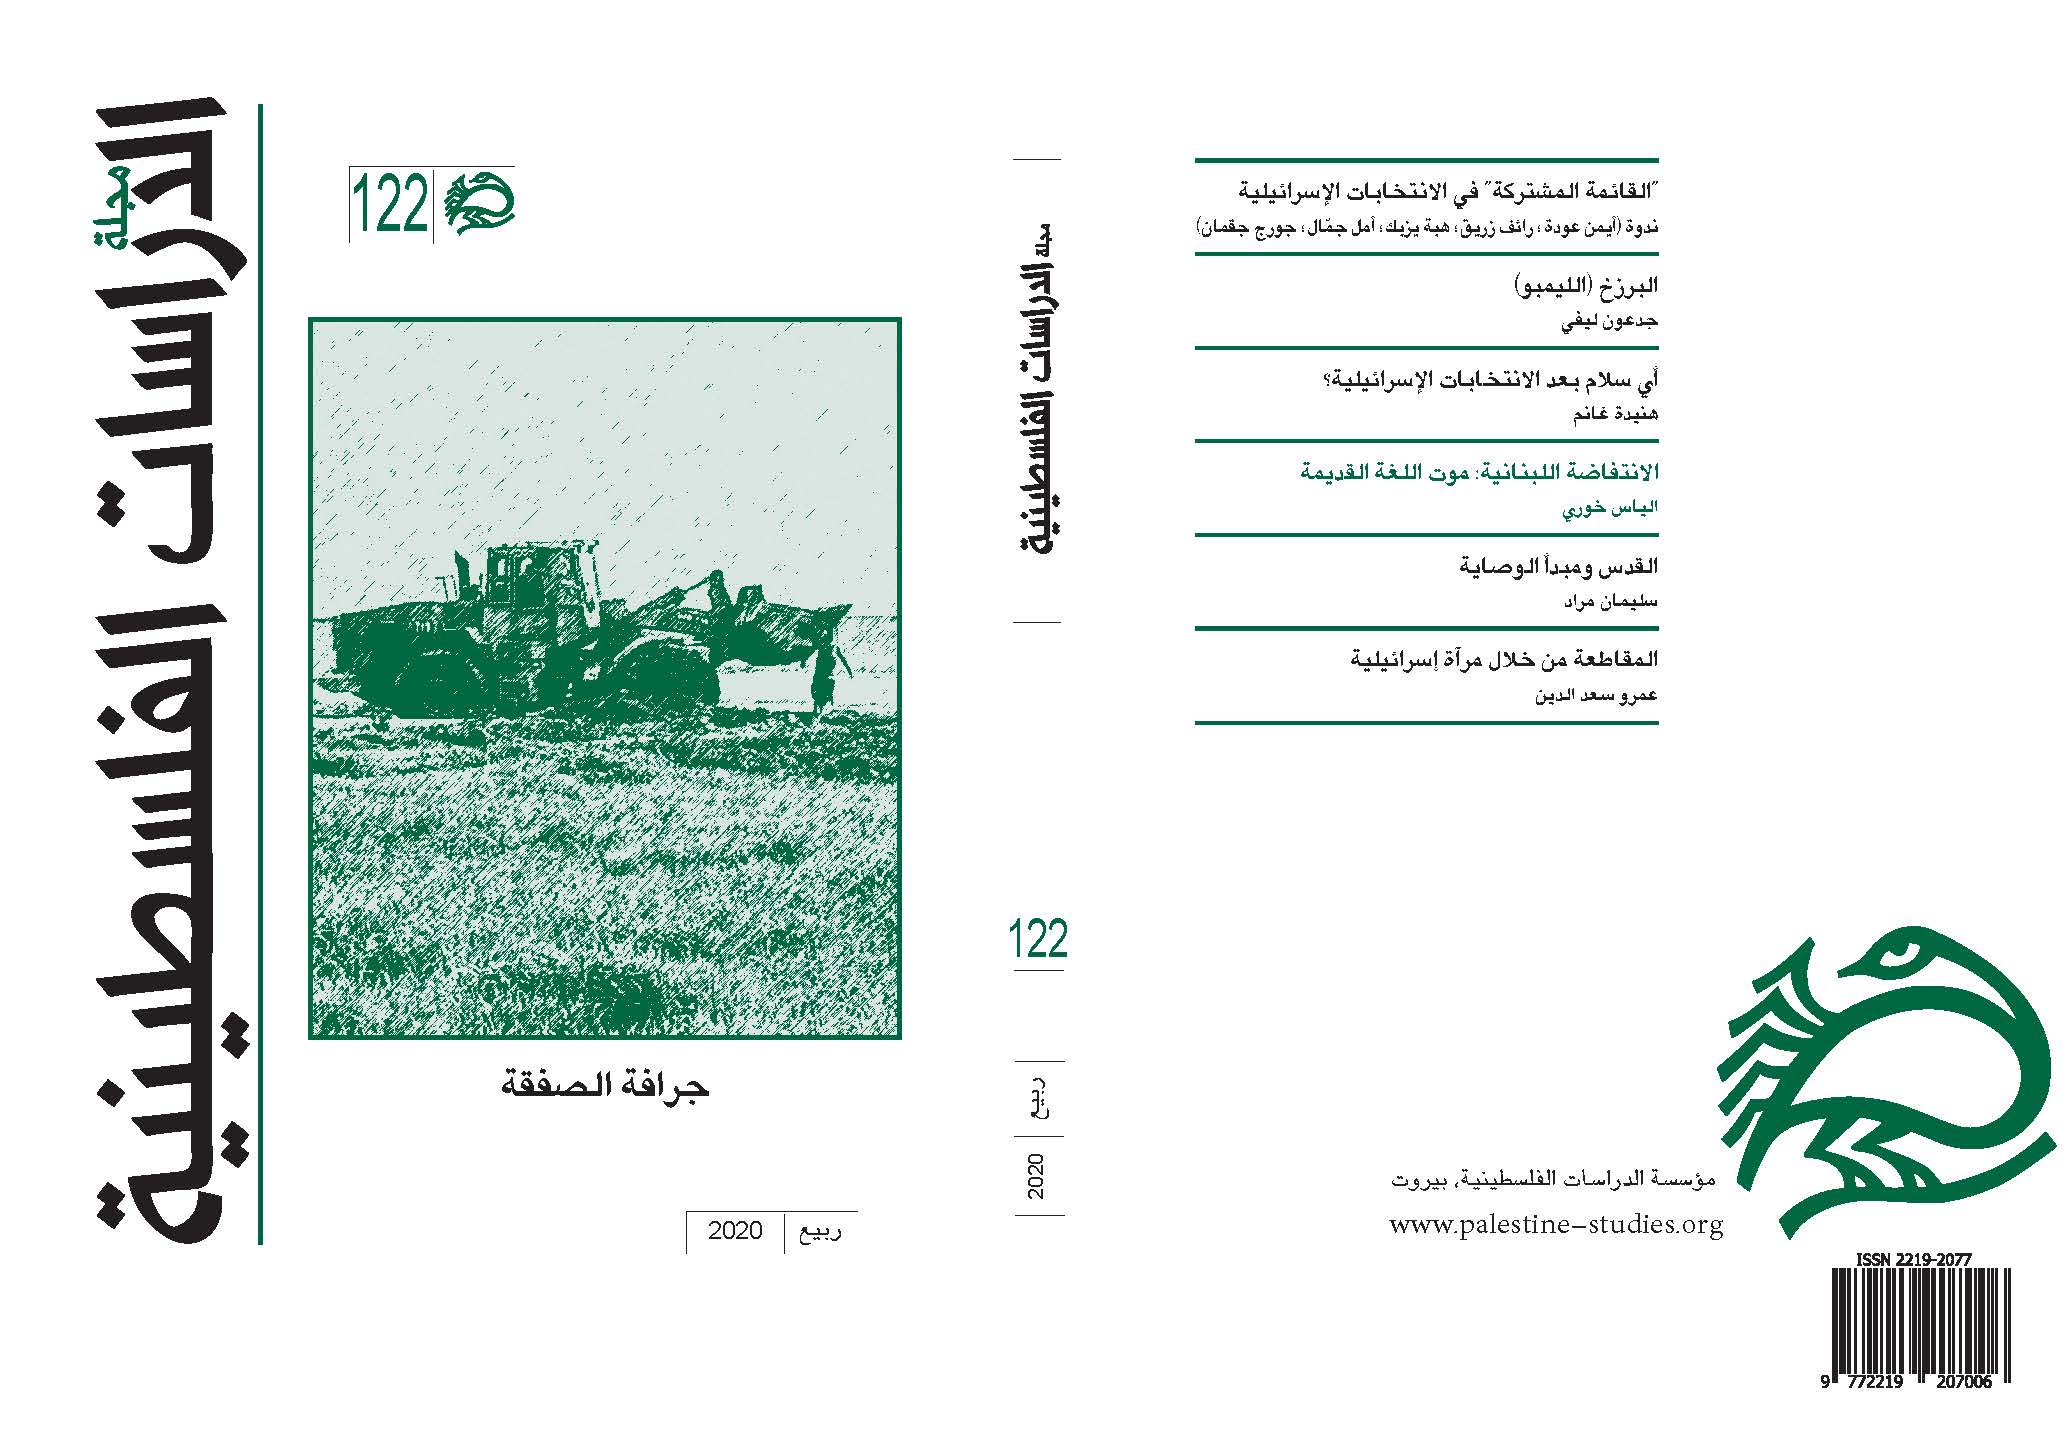 صدورالعدد 122 من مجلة الدراسات الفلسطينية  “جرافة الصفقة”